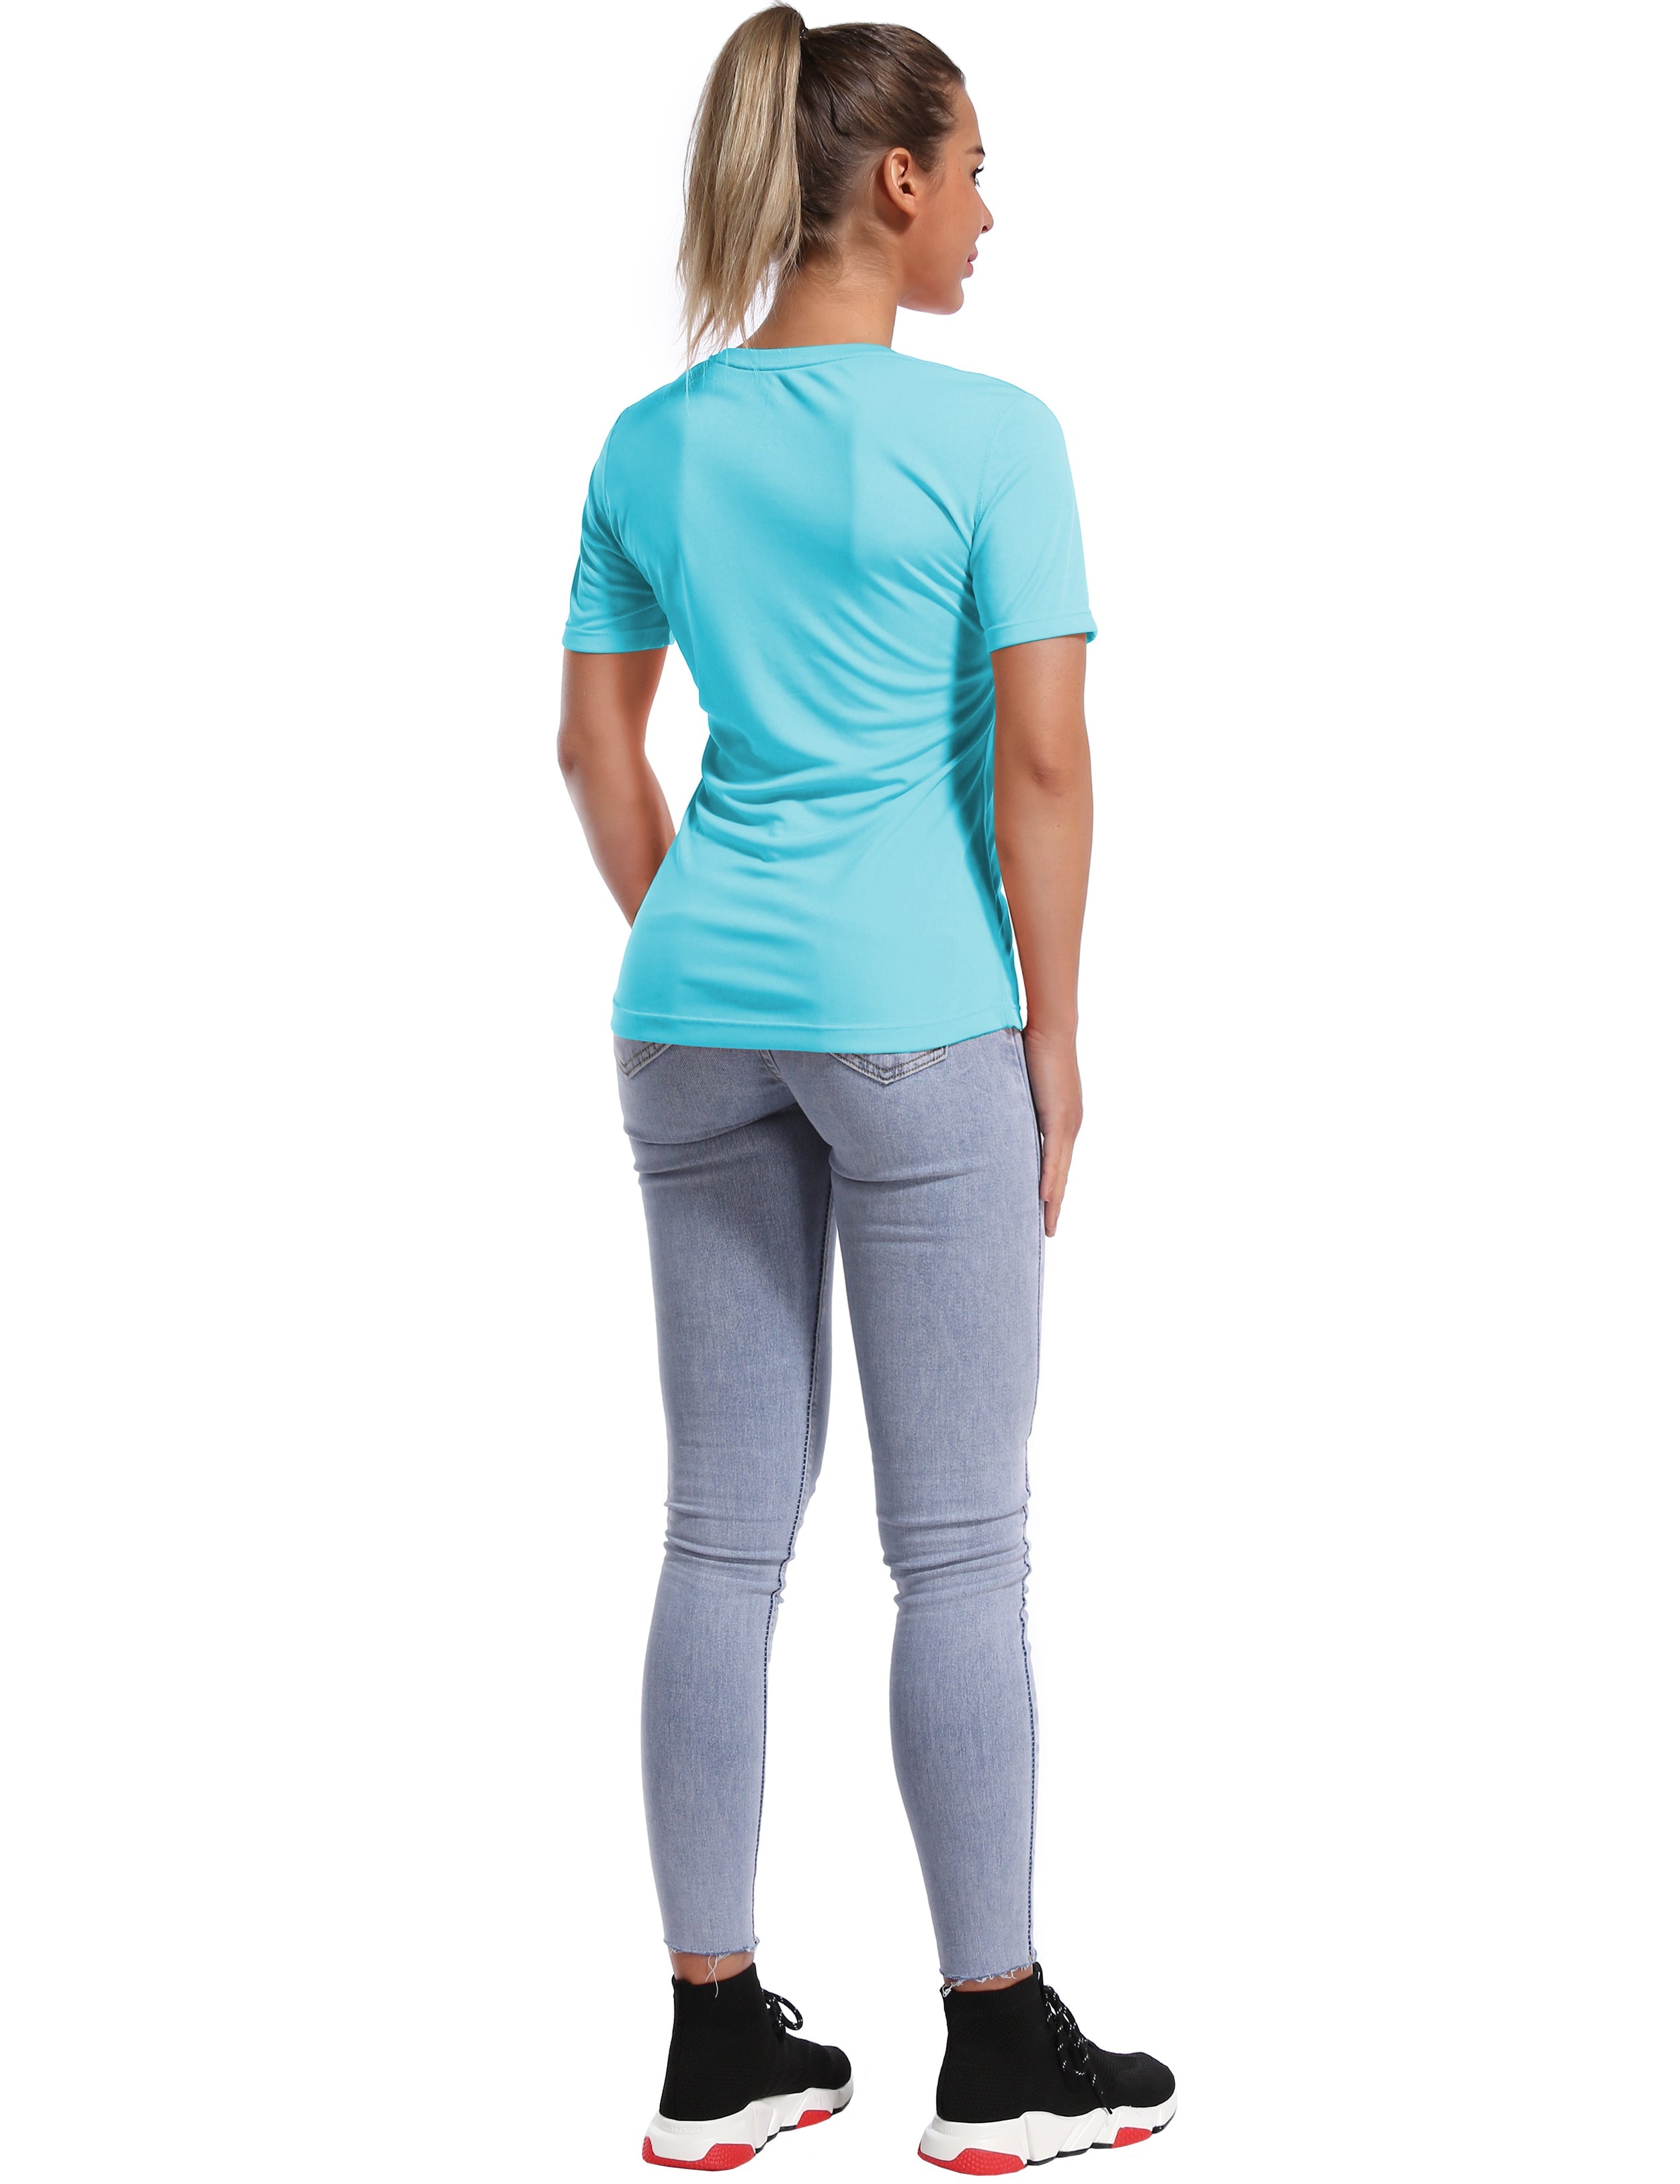 Short Sleeve Athletic Shirts blue_yoga